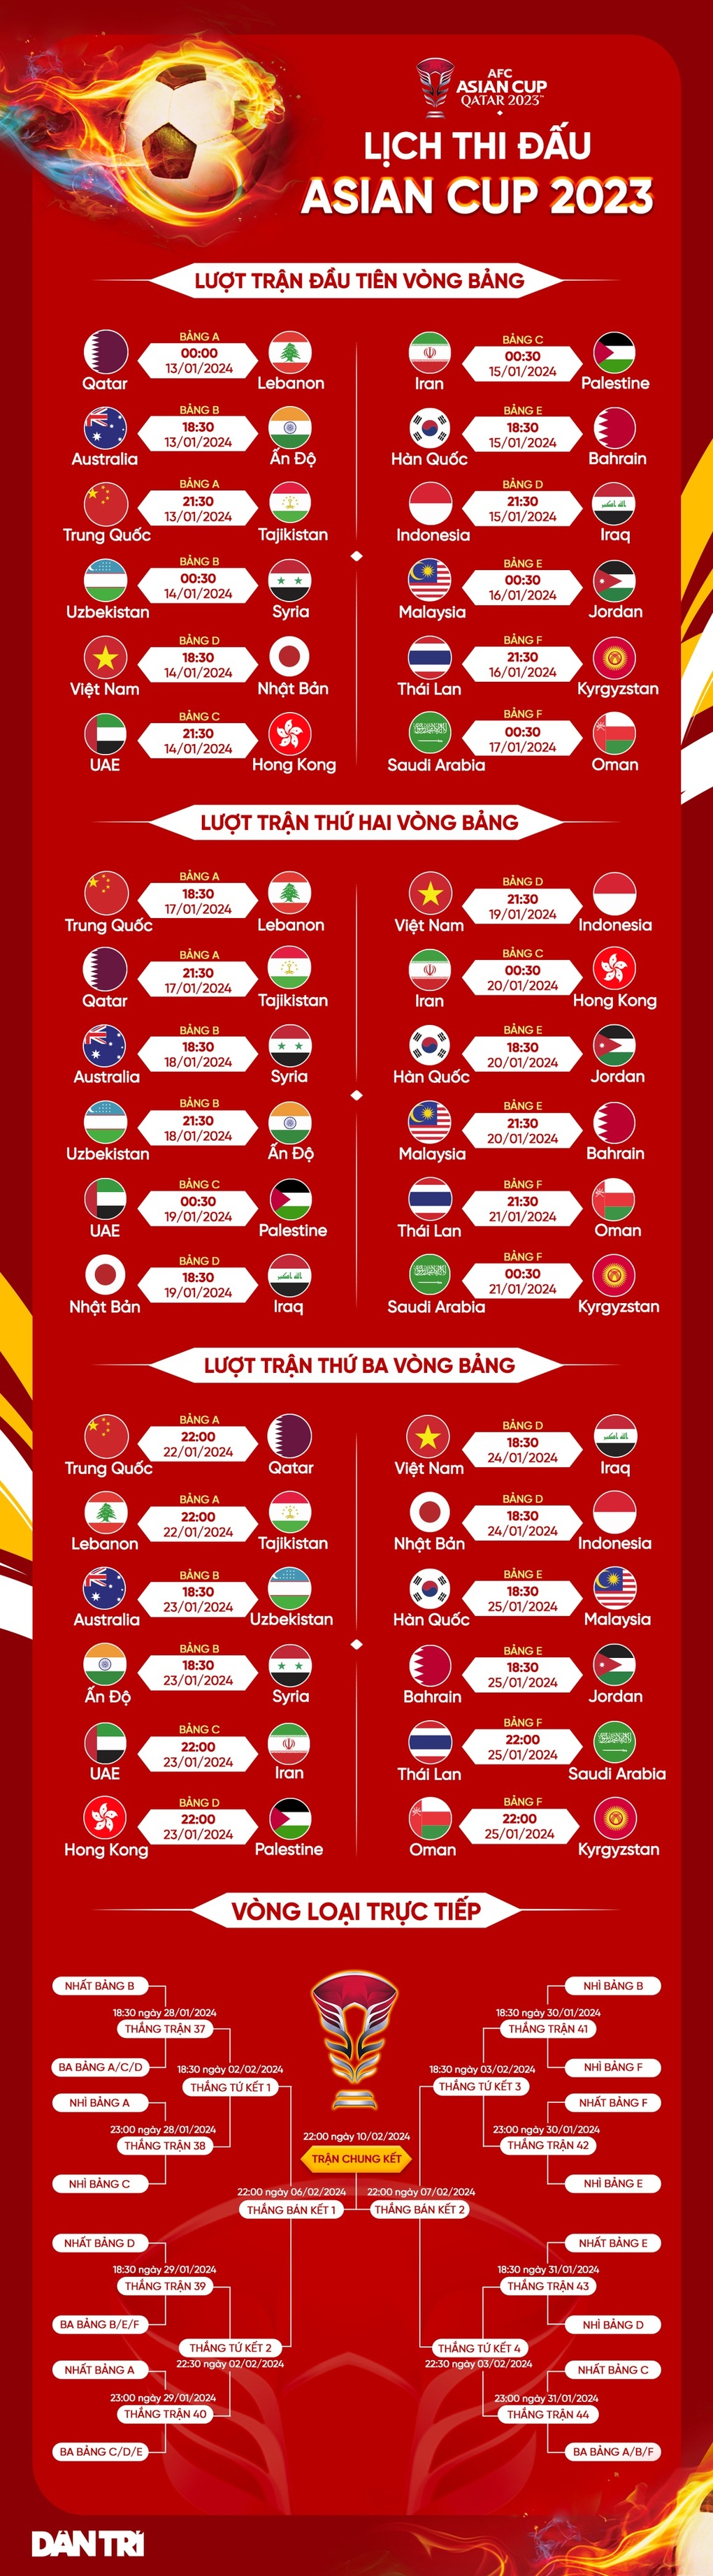 Siêu máy tính dự đoán bất ngờ về ĐT Việt Nam tại Asian Cup 2023 - Ảnh 3.